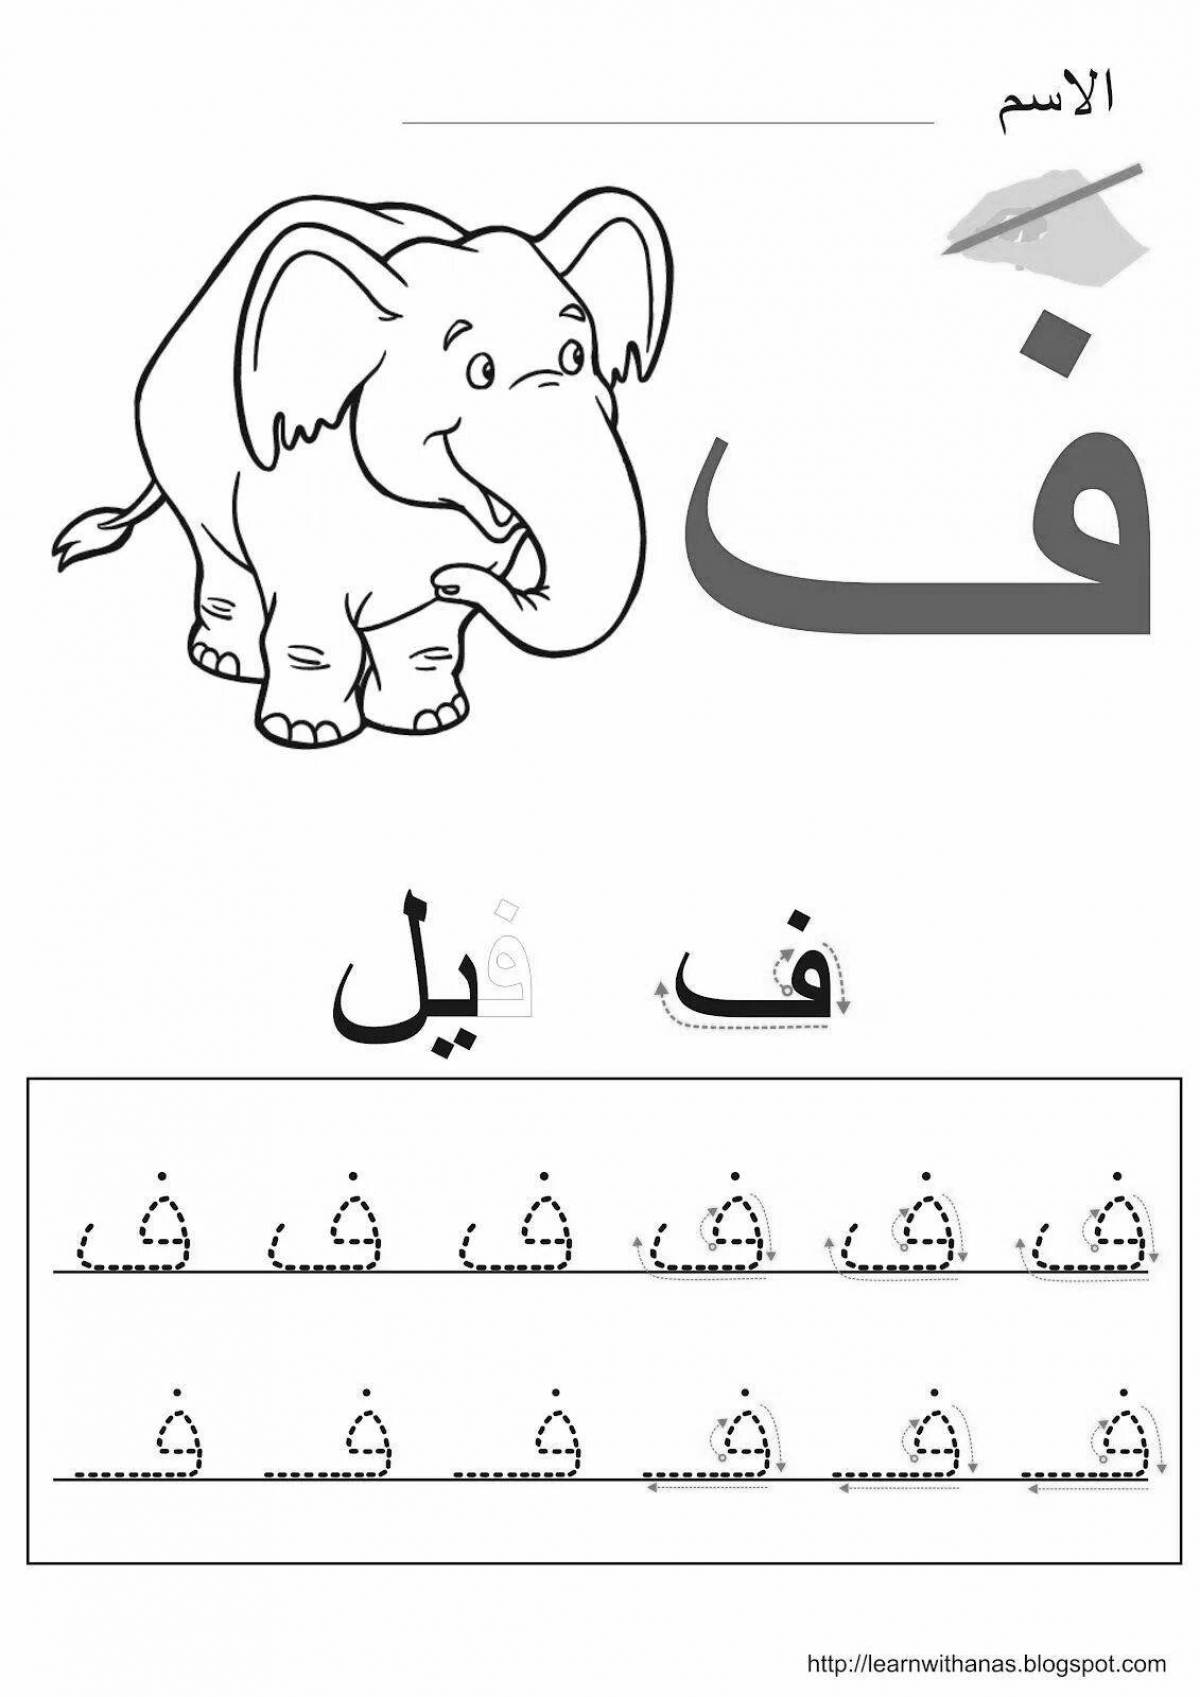 Красочная страница-раскраска арабского алфавита для маленьких учеников